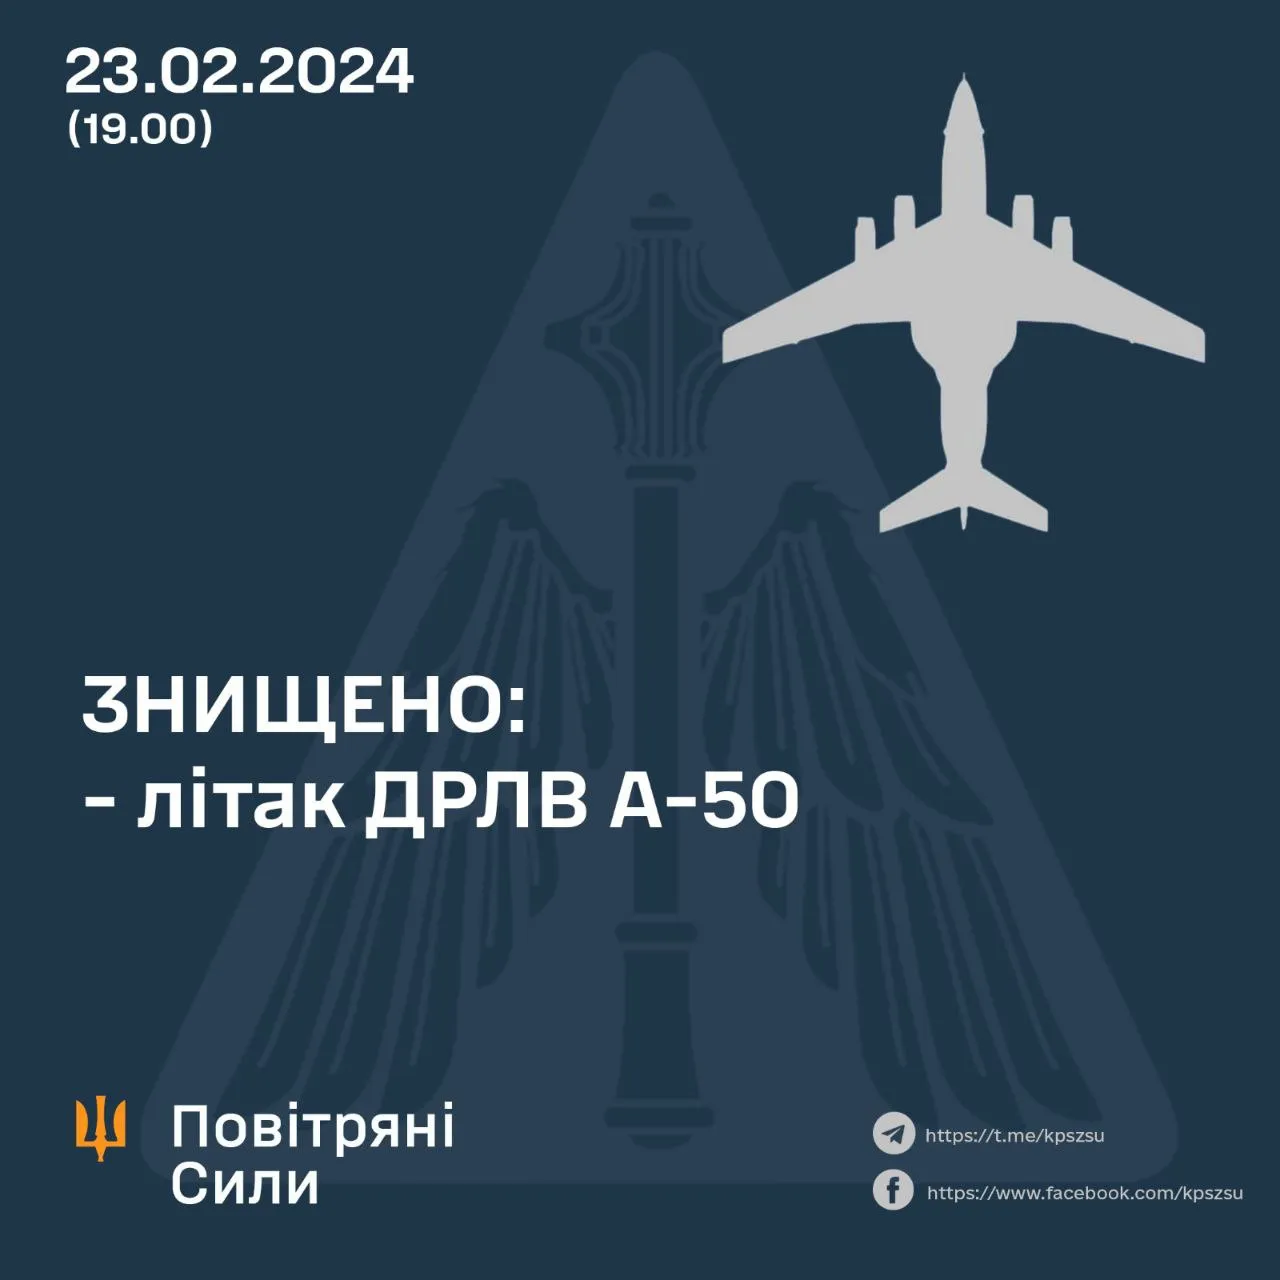 Повітряні сили збили ще один А-50 23 лютого 2024